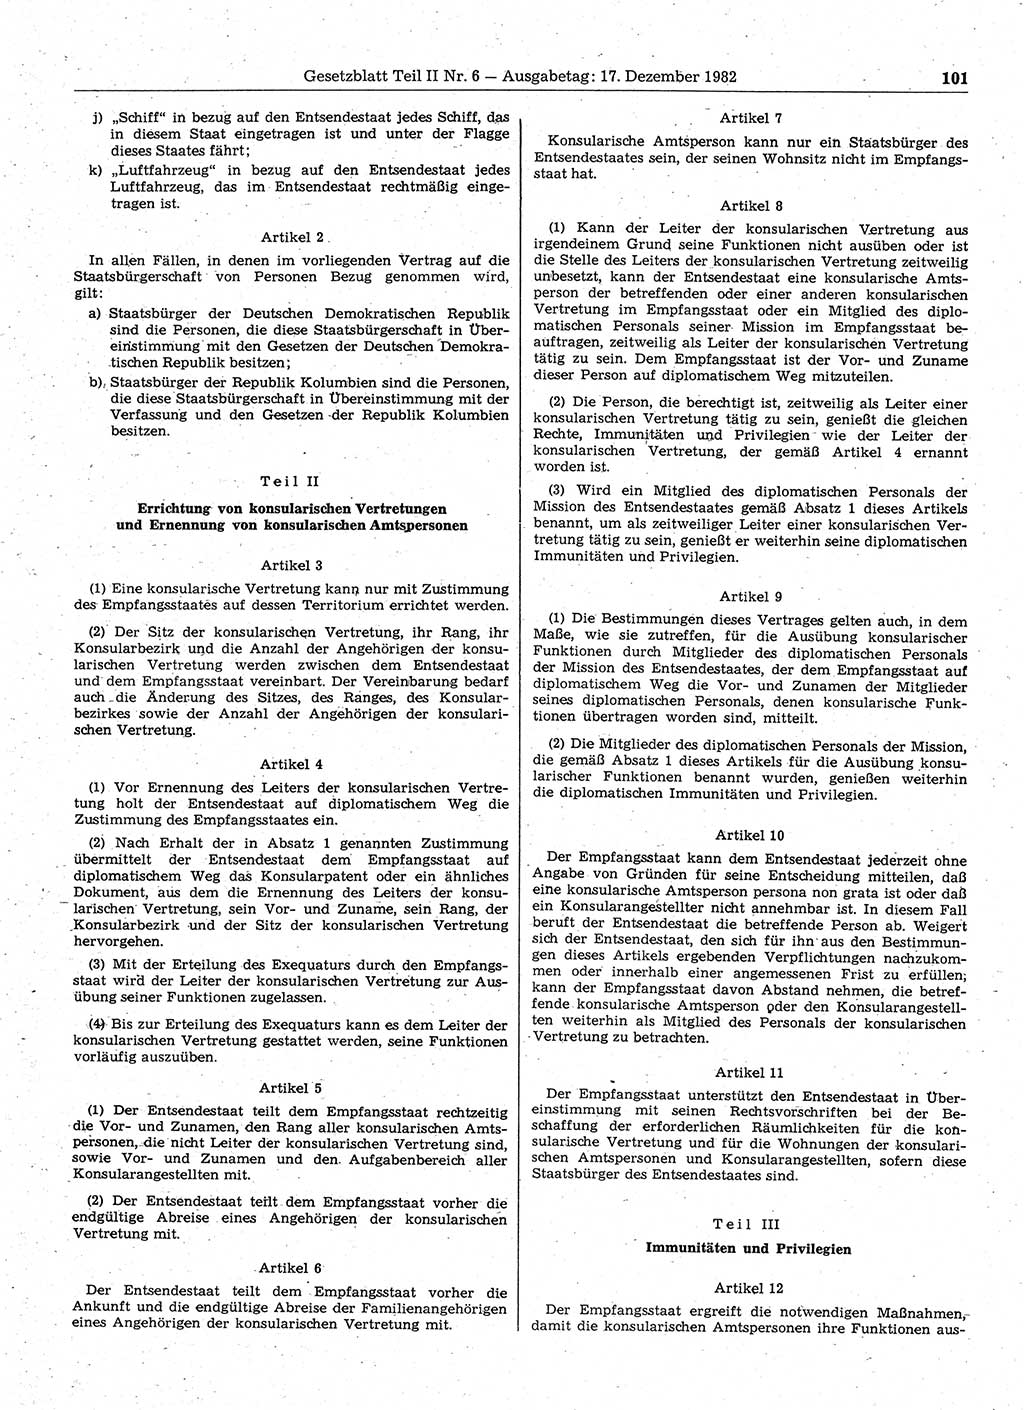 Gesetzblatt (GBl.) der Deutschen Demokratischen Republik (DDR) Teil ⅠⅠ 1982, Seite 101 (GBl. DDR ⅠⅠ 1982, S. 101)